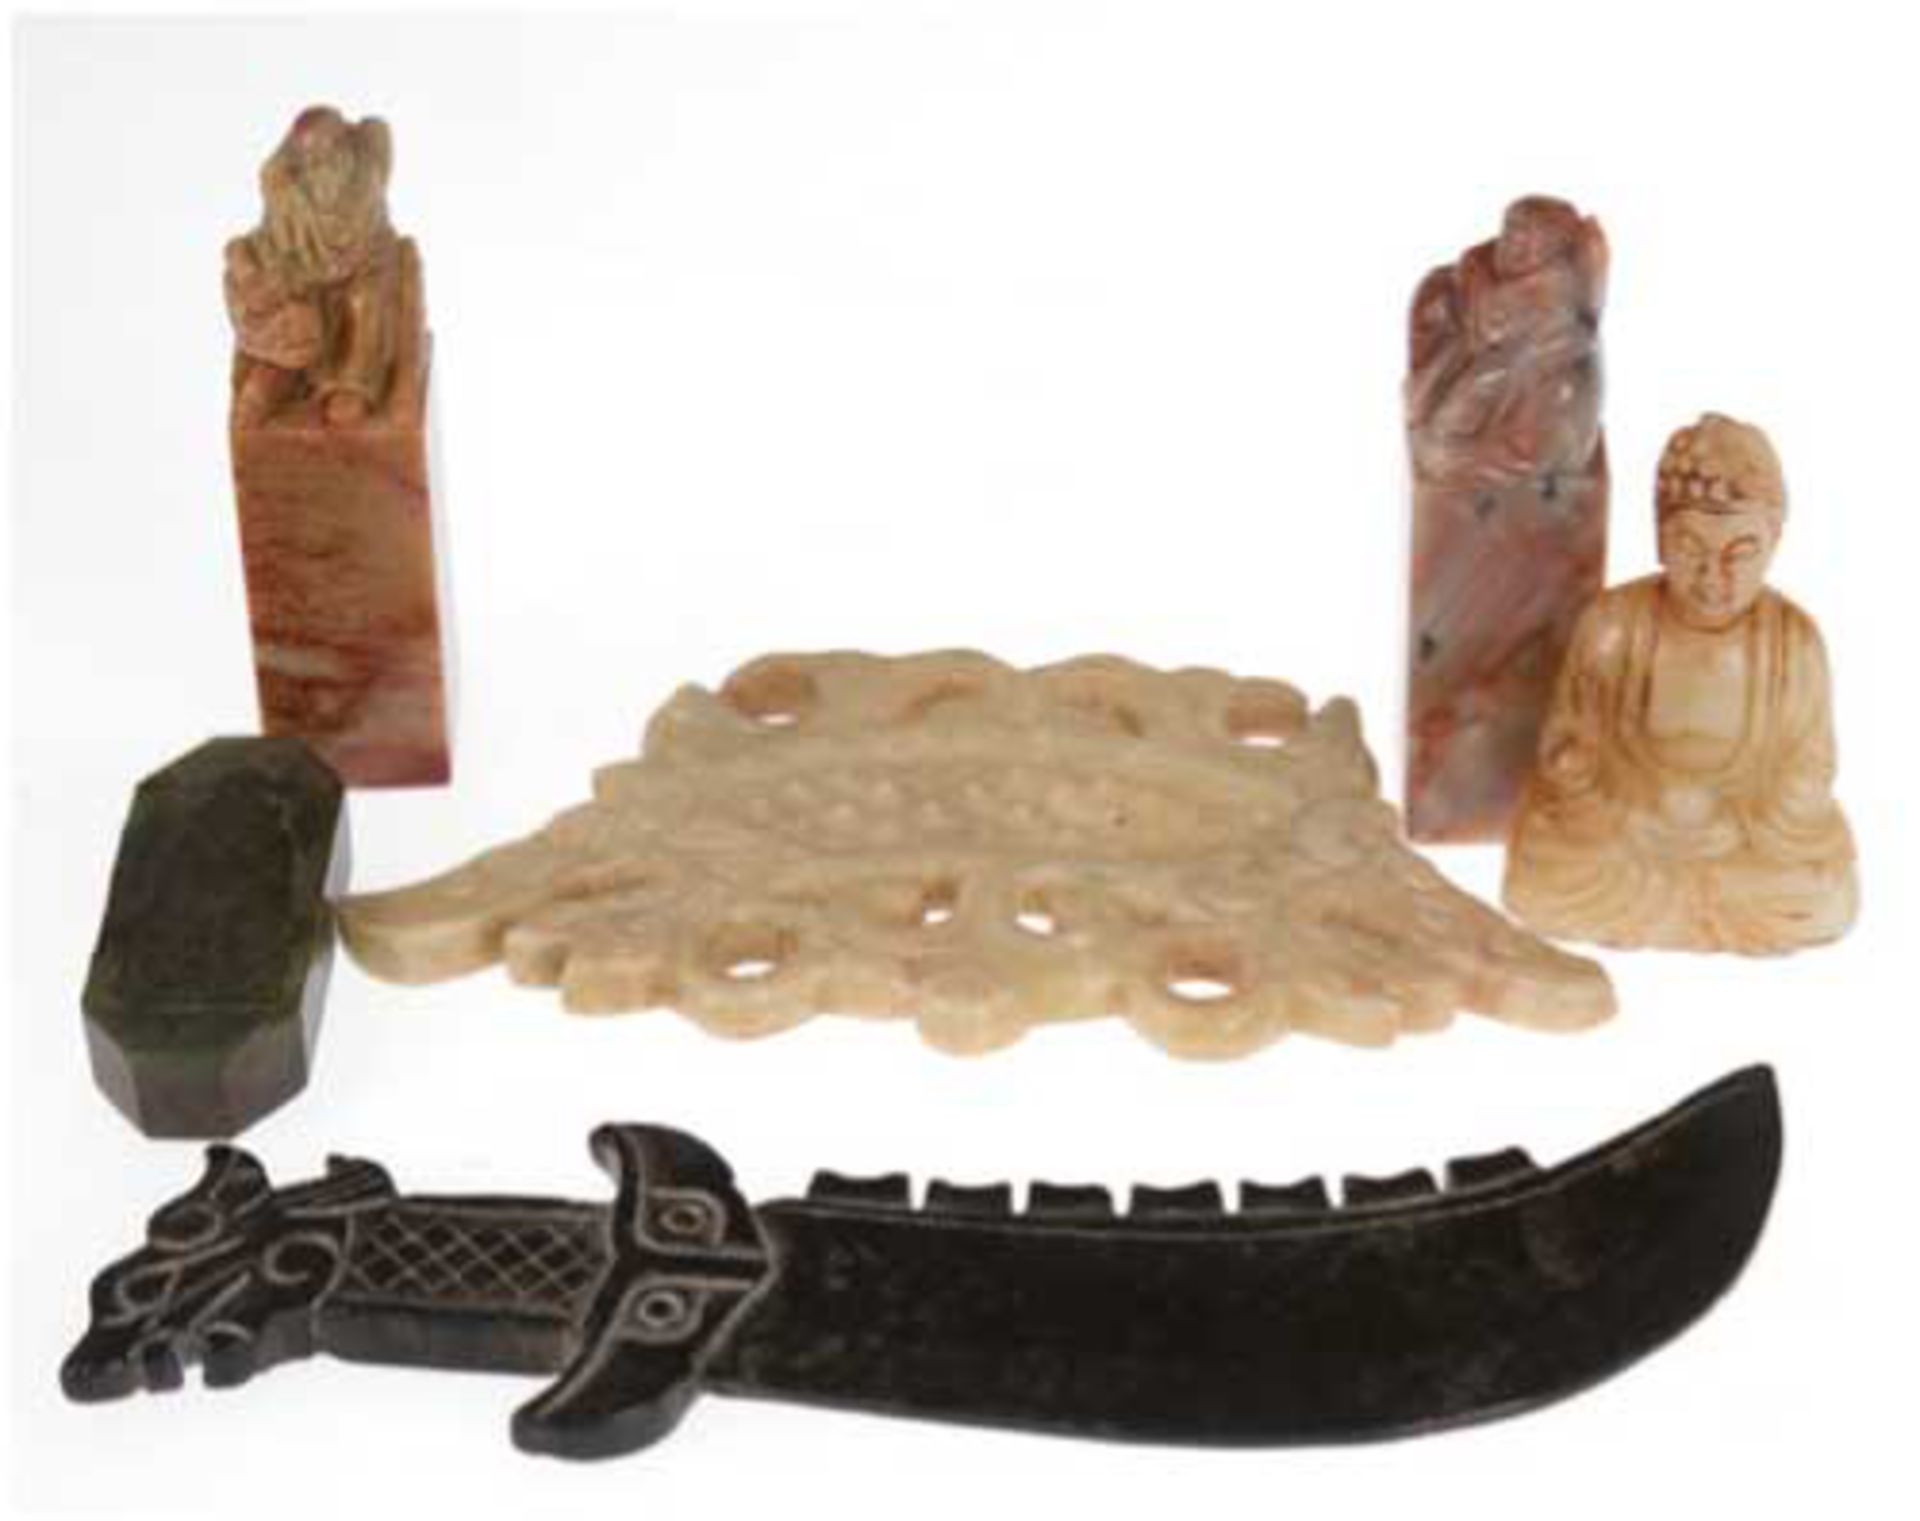 Konvolut Nephrite Jade, dabei Messer, mit geschnitztem Dekor, L. 16 cm, kleiner Buddha,H. 6 cm, paar